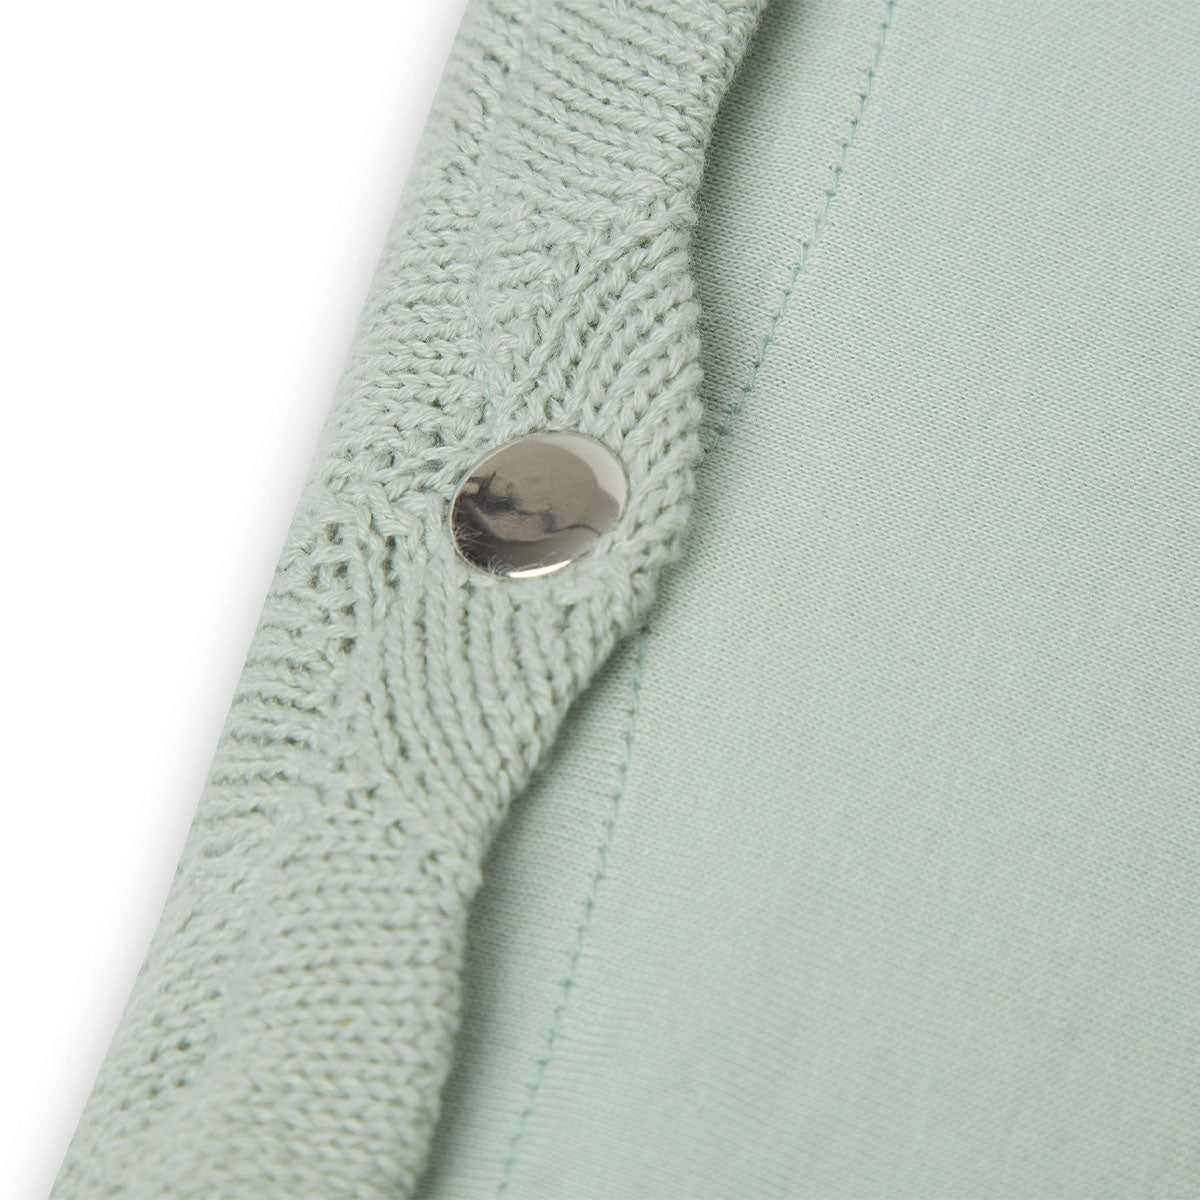 Verschonen of aankleden doe je in stijl met de aankleedkussenhoes (50x70 cm) shell knit sea foam GOTS van Jollein. Functioneel, comfortabel en hip! Leuk om cadeau te geven tijdens een babyshower of kraambezoek. VanZus